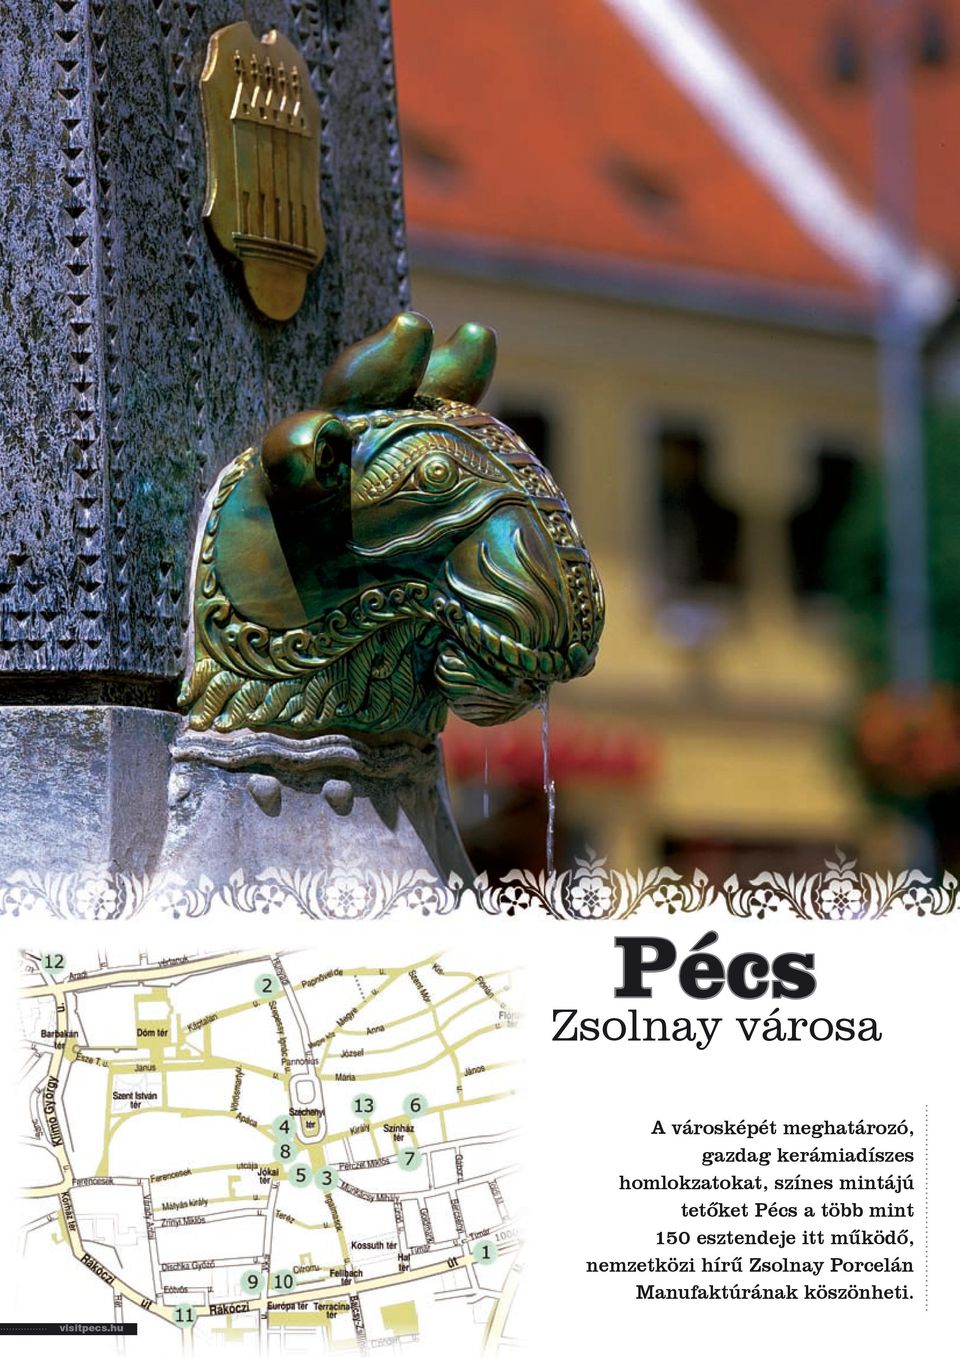 Pécs a több mint 150 esztendeje itt működő, nemzetközi